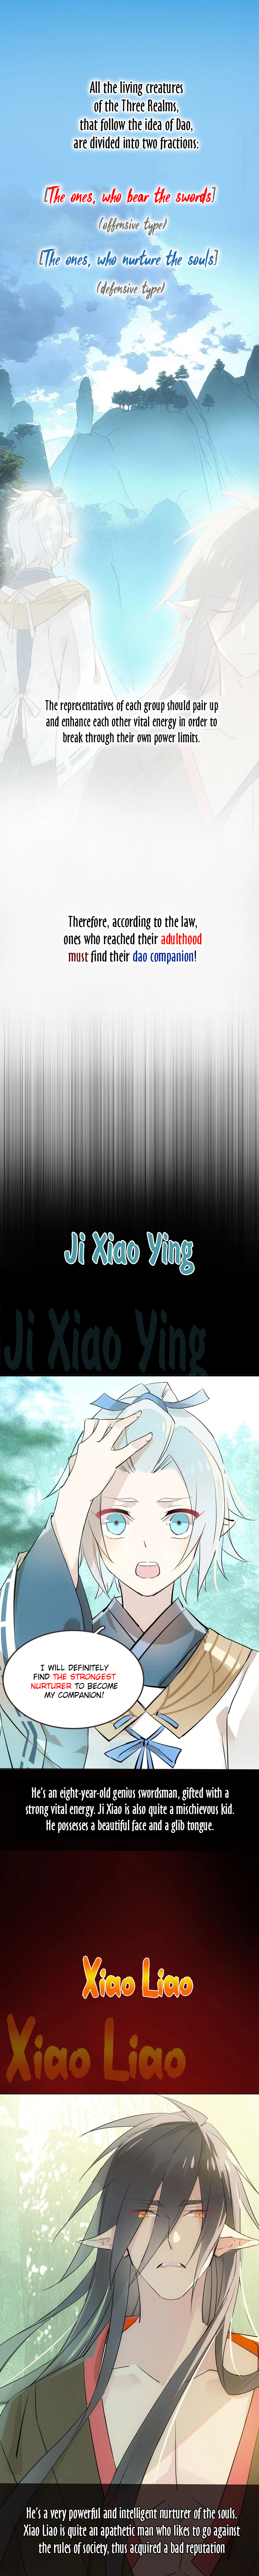 Zhi Zi Zhi Jian Vol. 1 Ch. 0 Prologue